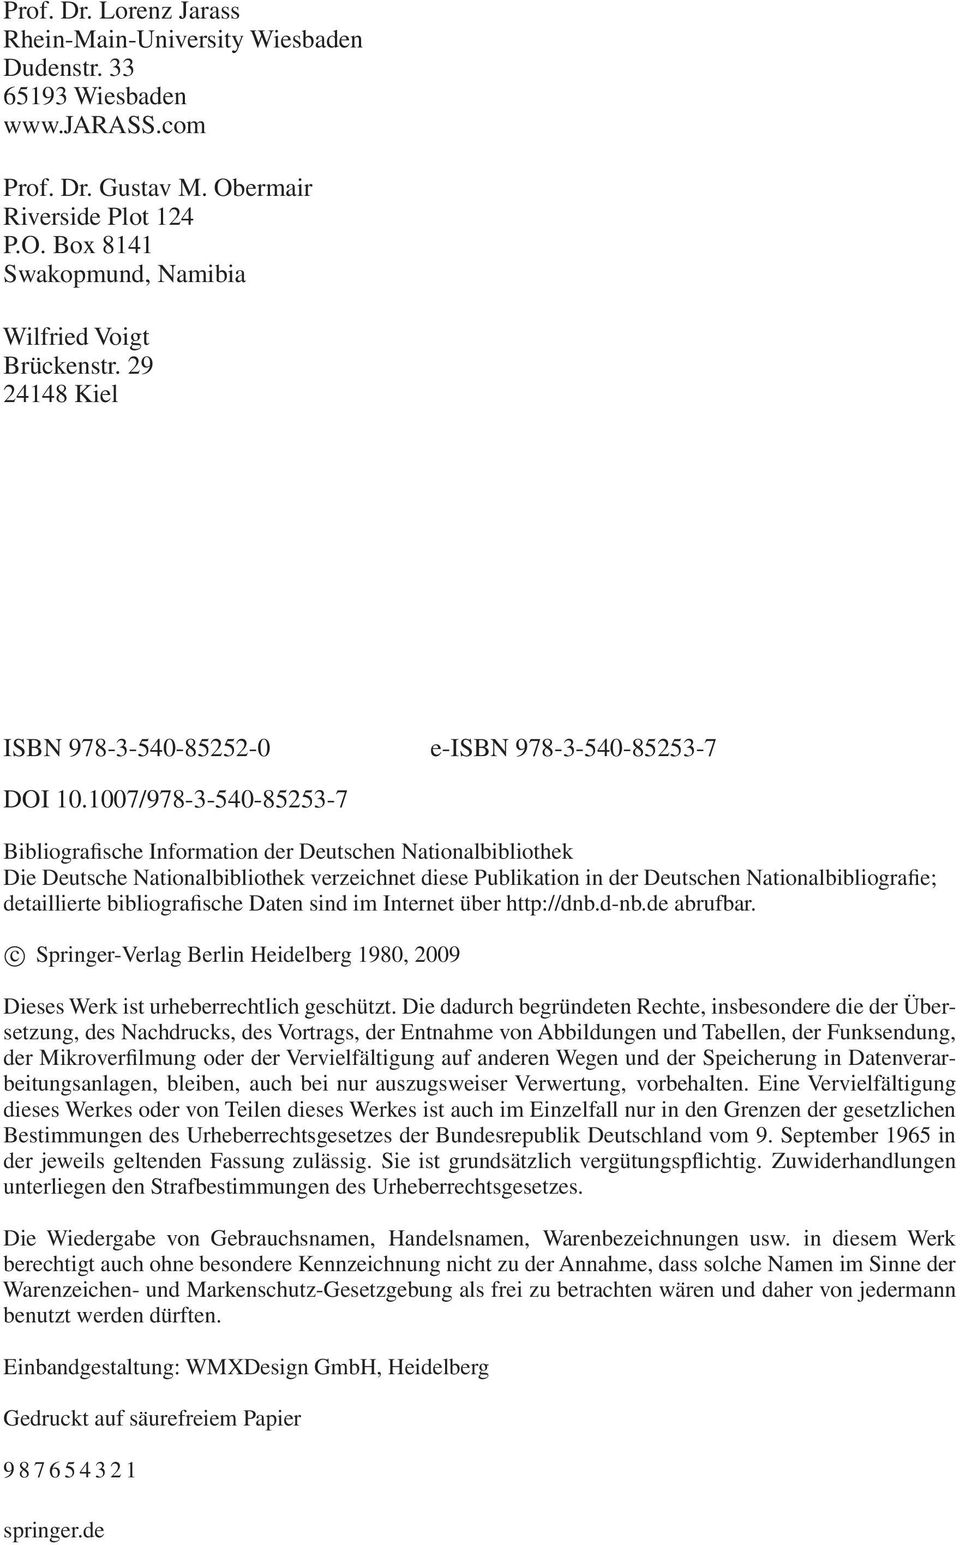 1007/978-3-540-85253-7 Bibliografische Information der Deutschen Nationalbibliothek Die Deutsche Nationalbibliothek verzeichnet diese Publikation in der Deutschen Nationalbibliografie; detaillierte